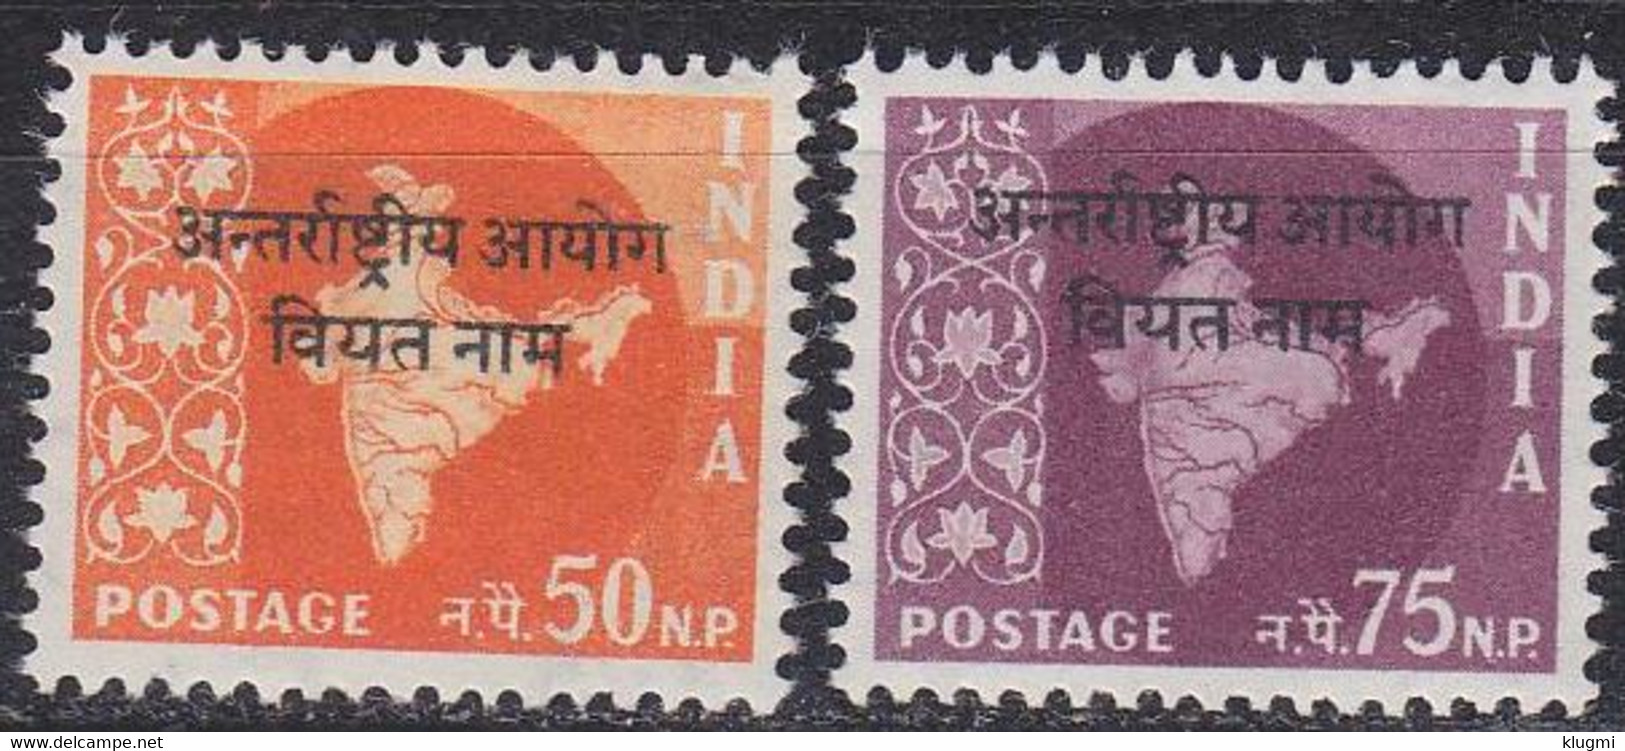 INDIEN INDIA [Vietnam] MiNr 0006 Ex ( **/mnh ) [01] - Militärpostmarken